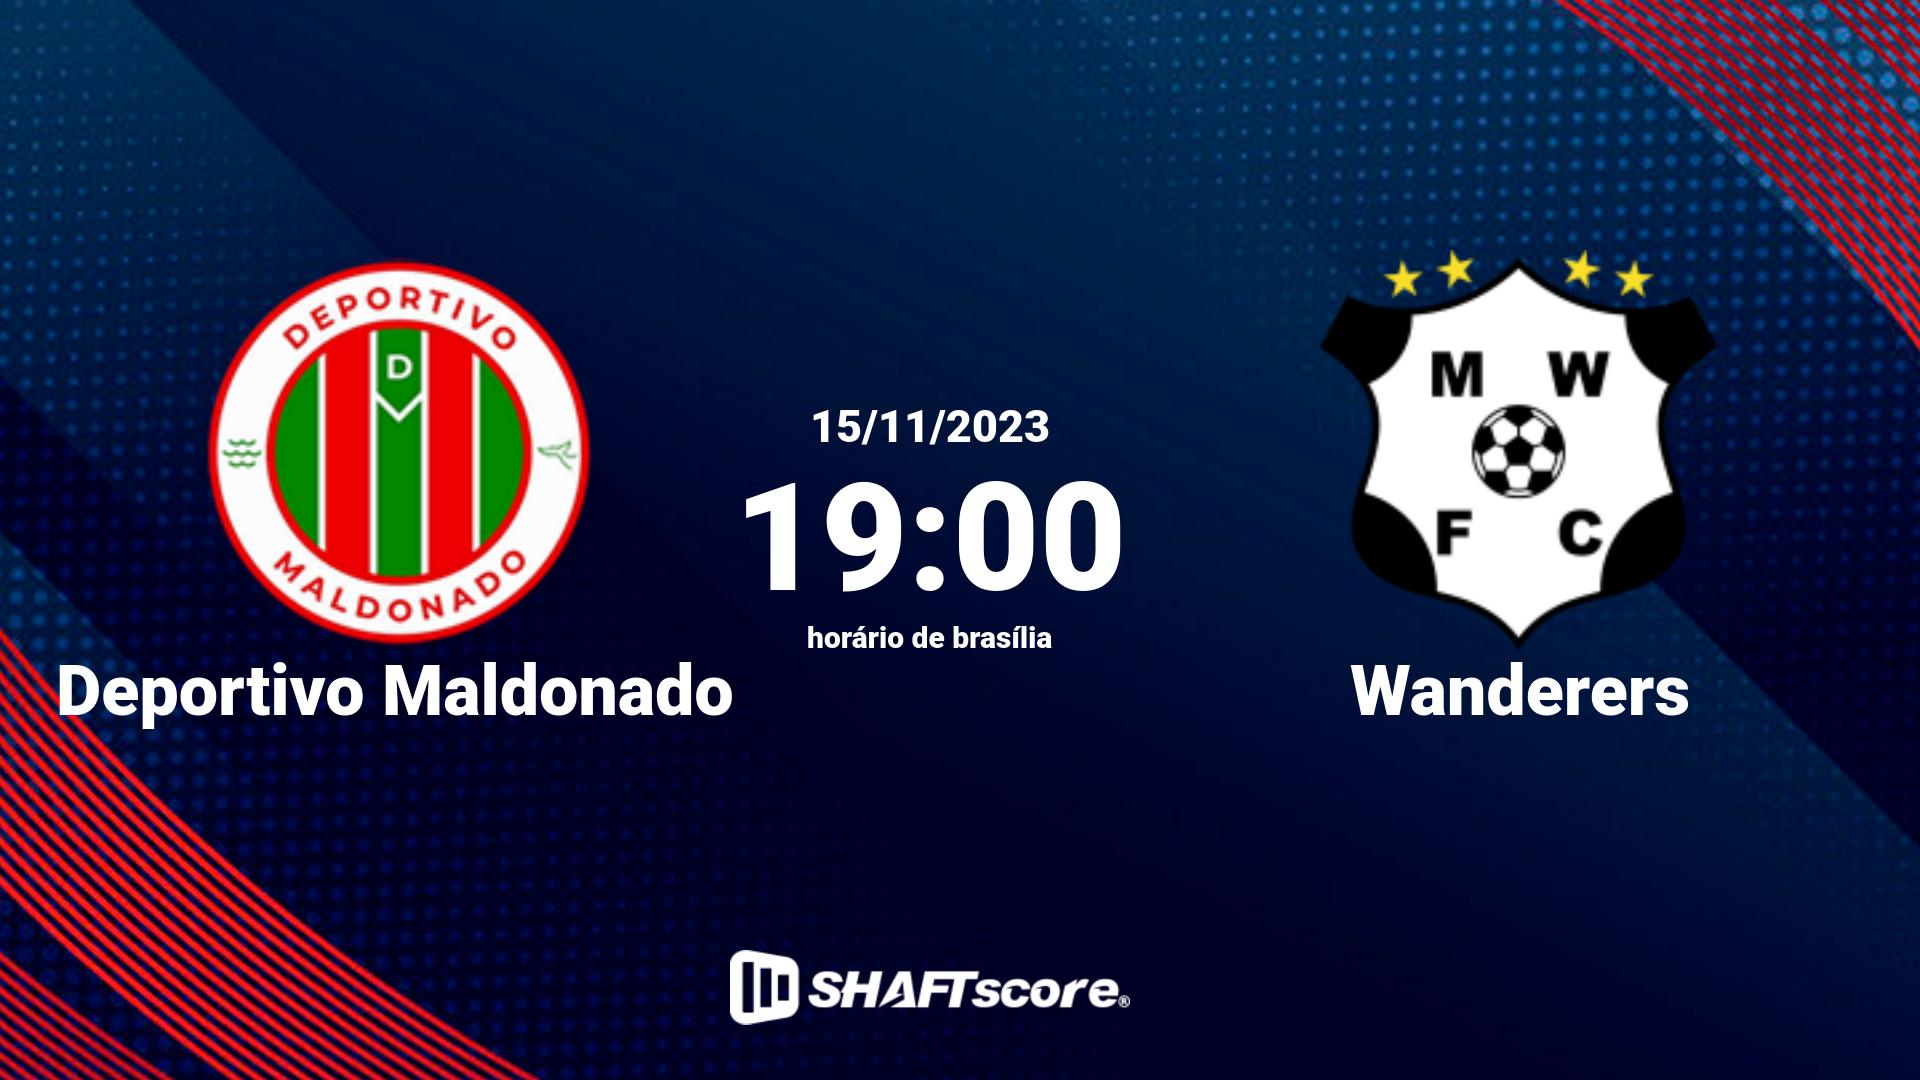 Estatísticas do jogo Deportivo Maldonado vs Wanderers 15.11 19:00